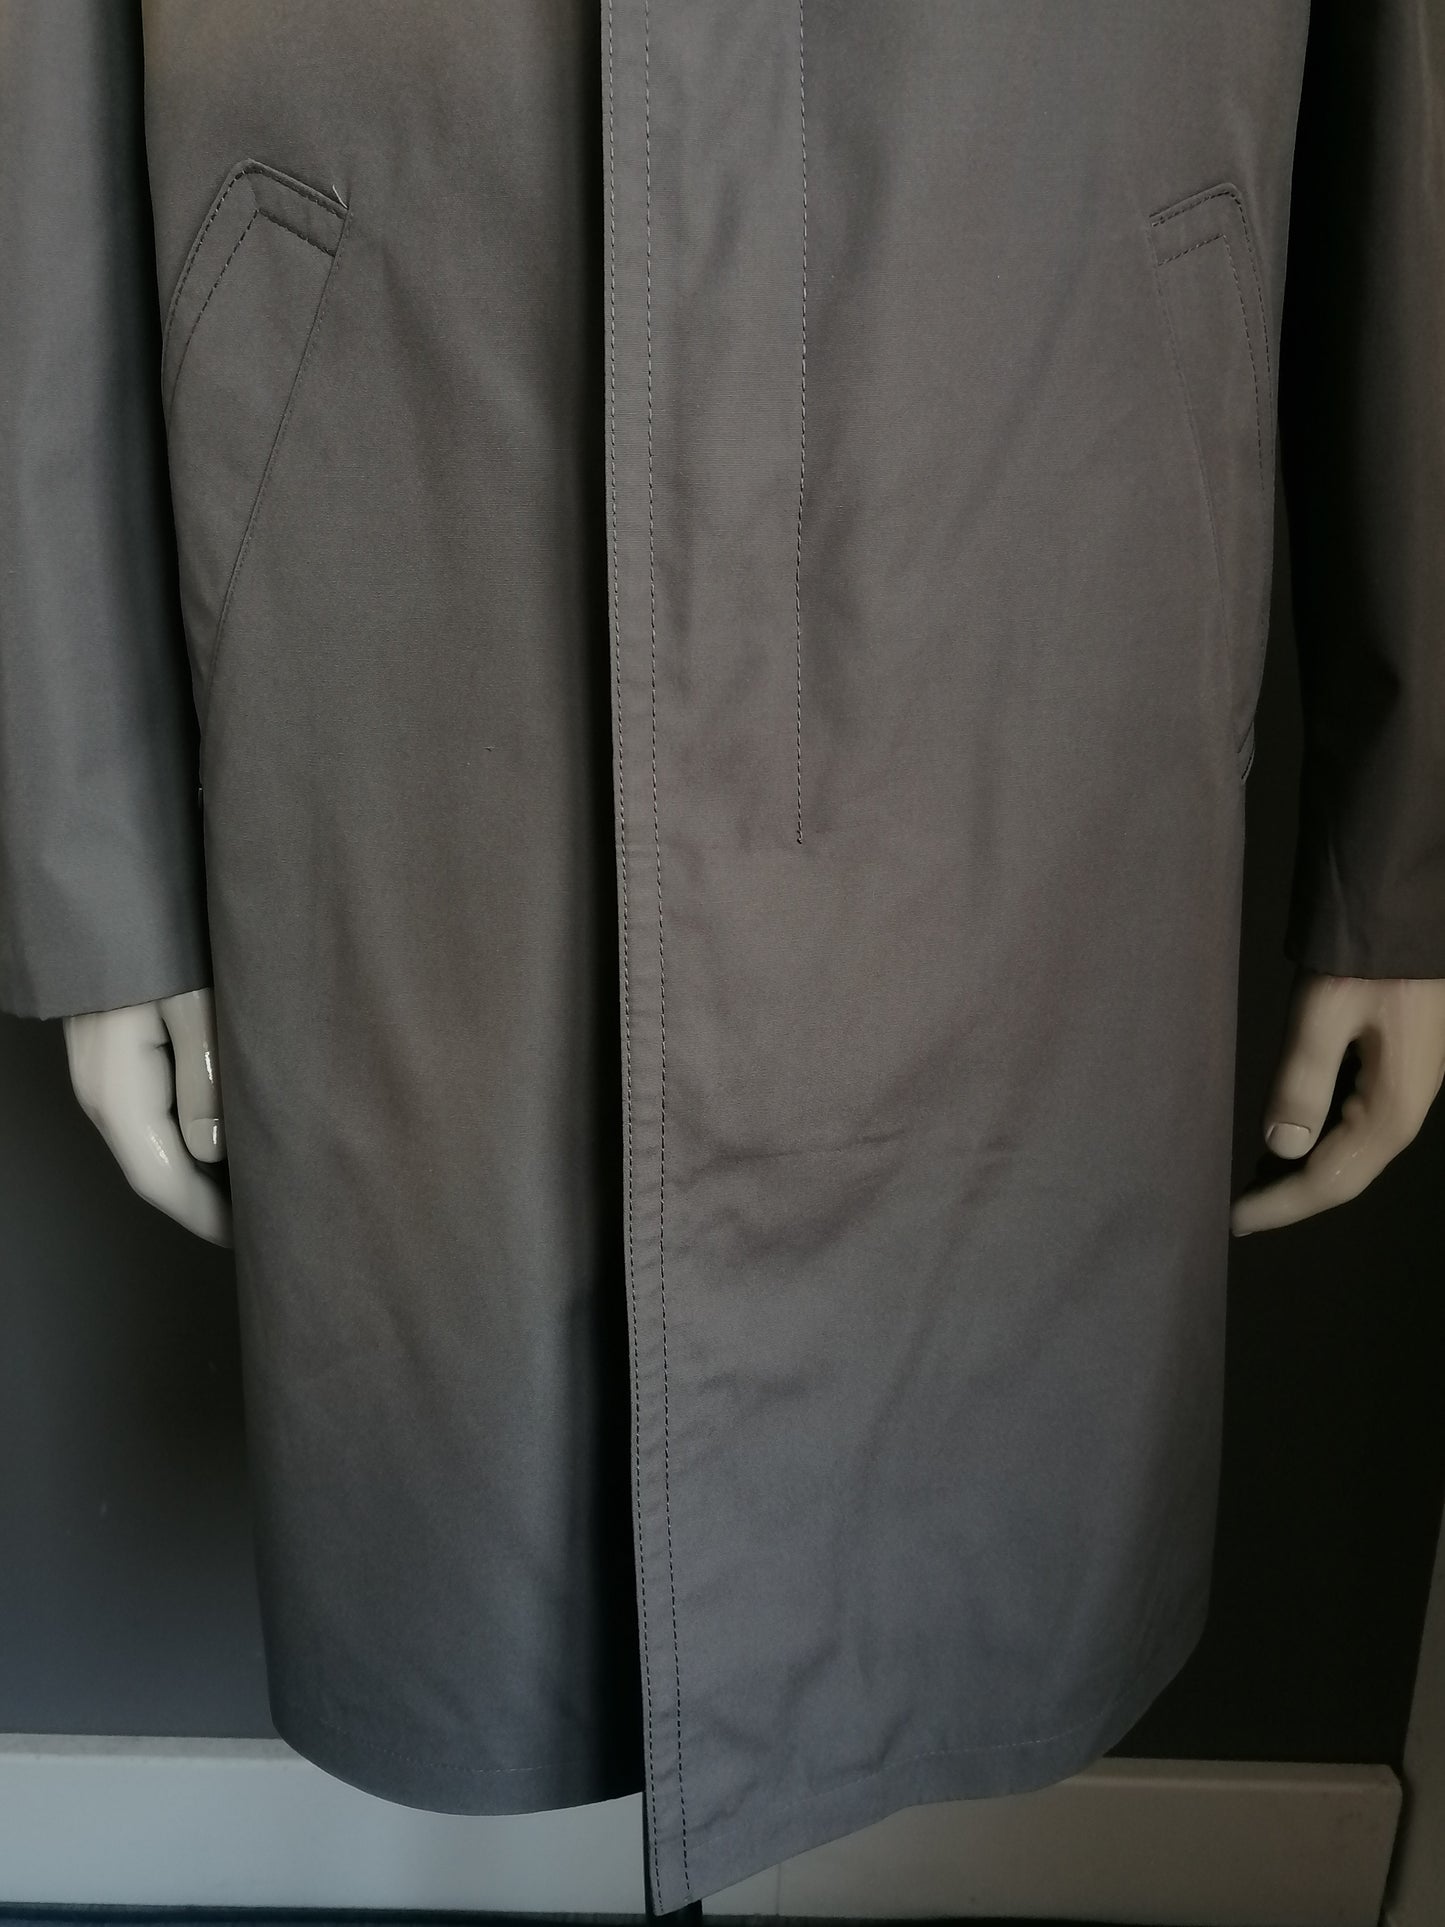 Vintage Werther Mantel / Halb -Länge -Jacke. Grau gefärbt. Größe 52 / L. Abnehmbare Wollfutter.